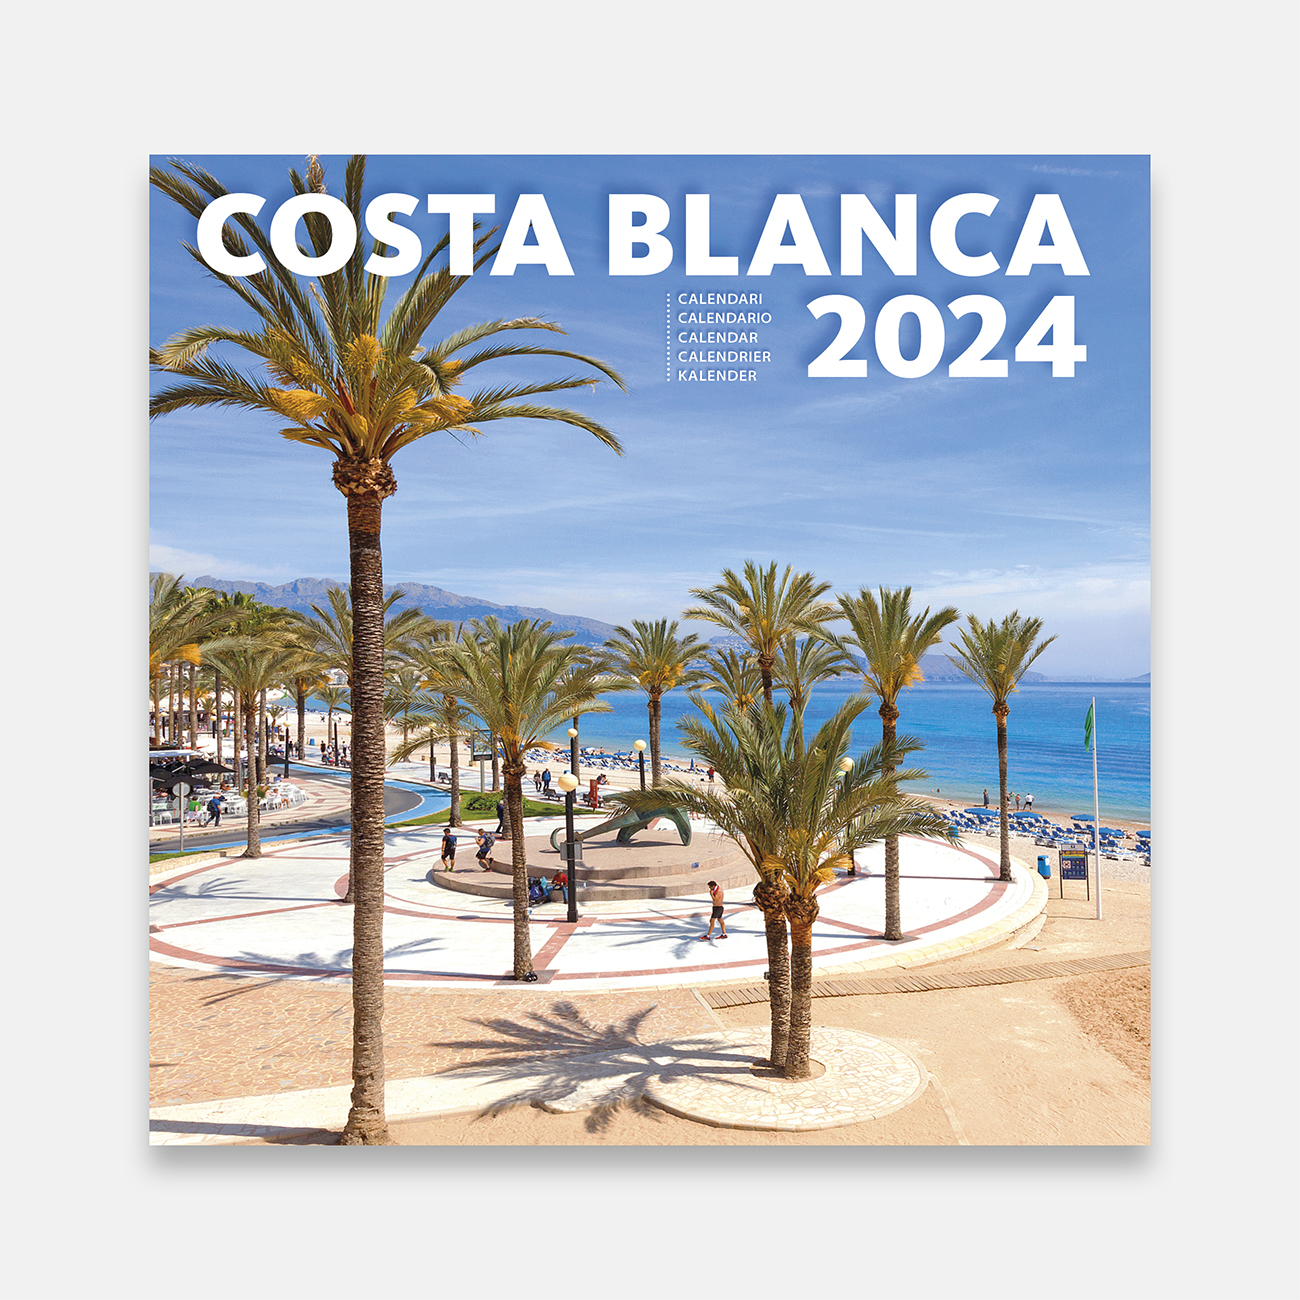 Calendario 2025 Costa Blanca 25bl b calendario pared 2025 costa blanca